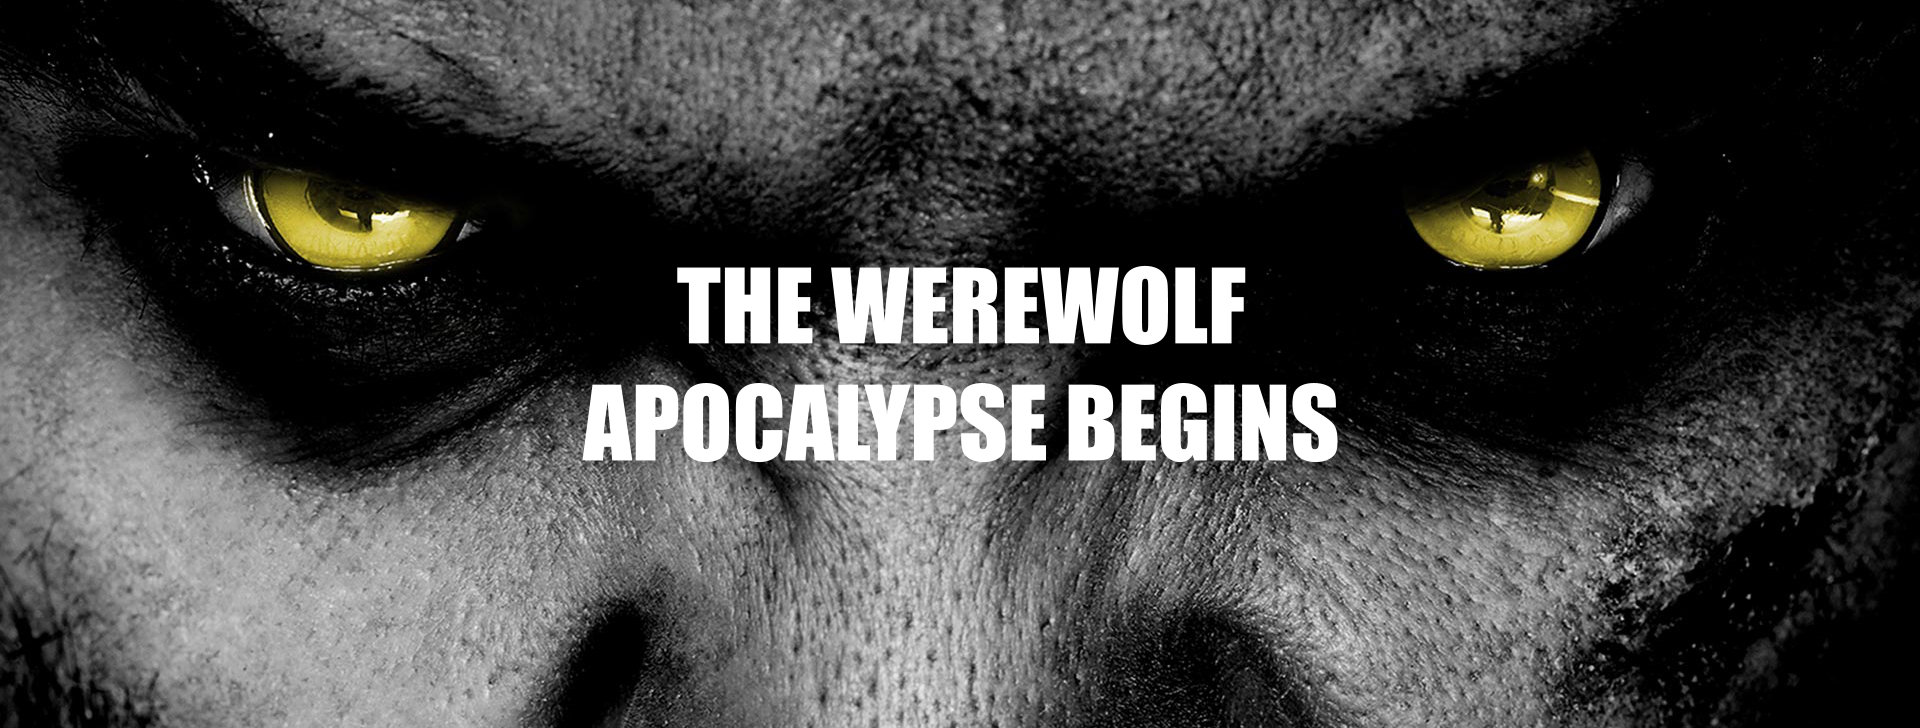 The werewolf apocalypse begins